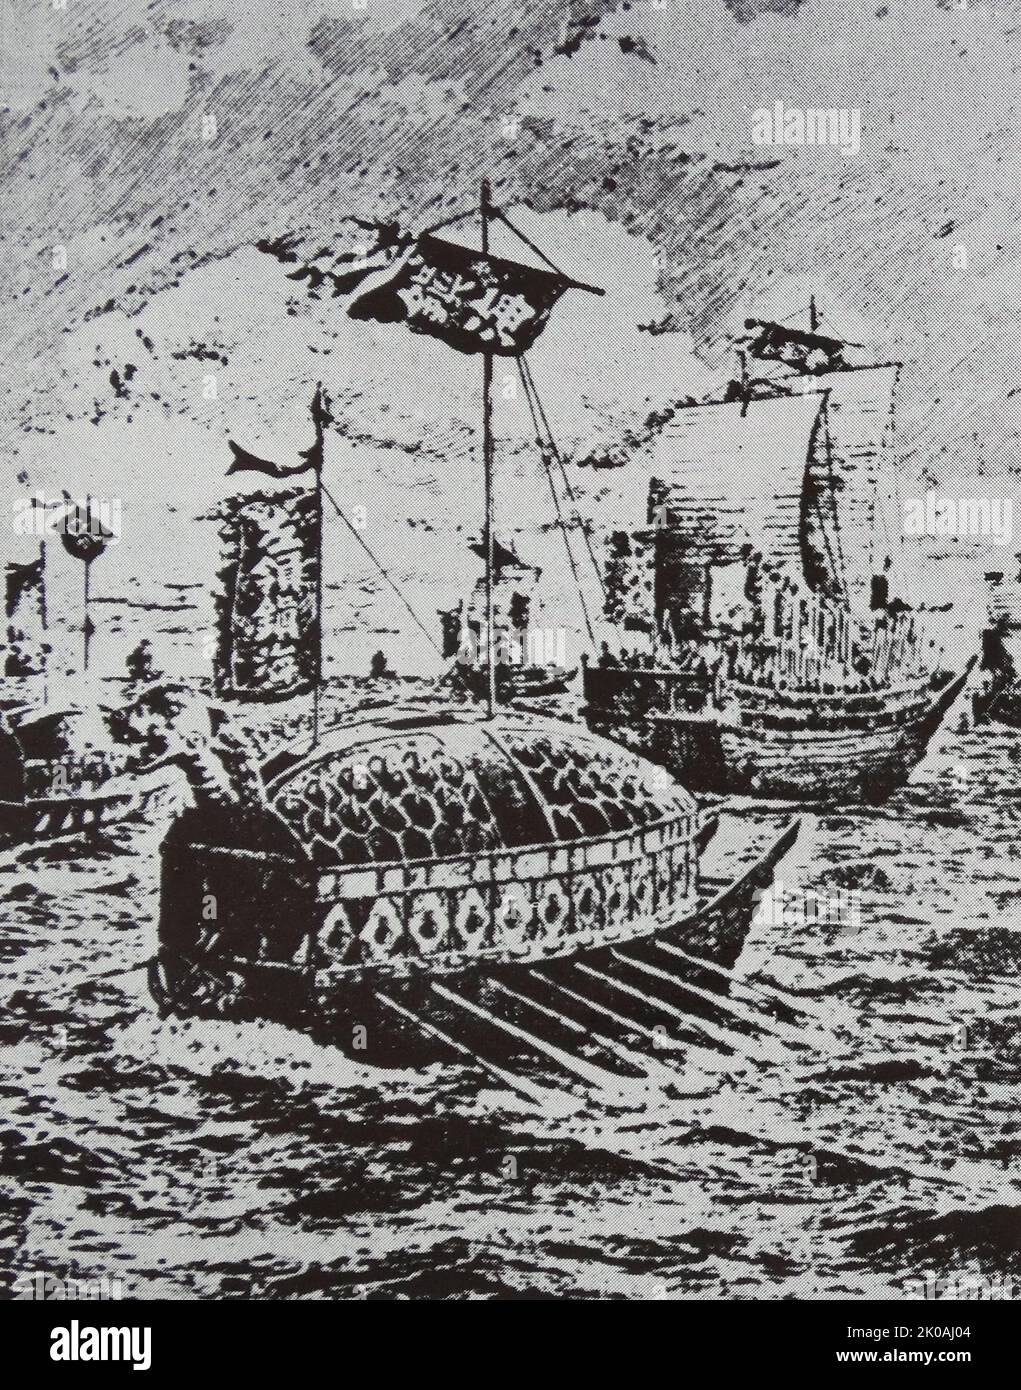 Die japanischen Invasionen in Korea von 1592-1598 oder im Imjin-Krieg beinhalteten zwei separate, aber miteinander verbundene Invasionen: Eine erste Invasion im Jahr 1592, einen kurzen Waffenstillstand im Jahr 1596 und eine zweite Invasion im Jahr 1597. Im Jahr 1591 wurde Admiral Yi Sun Sin zum Kommandeur der linken Marine der Provinz Cholla ernannt, der mit dem Schutz der südwestlichen Küste Koreas beauftragt war. Während des ersten Jahres der Invasion versetzte sich Admiral Yi in zehn aufeinanderfolgenden Seesiegen, die die japanische Marine dezimierten. Admiral Yi gewann seinen neunten Sieg in der Schlacht von Pusan-p'o. Seine Flotte von 92 Schiffen, angeführt vom Schildkrötenschiff, traf auf 470 japanische Schiffe und Stockfoto